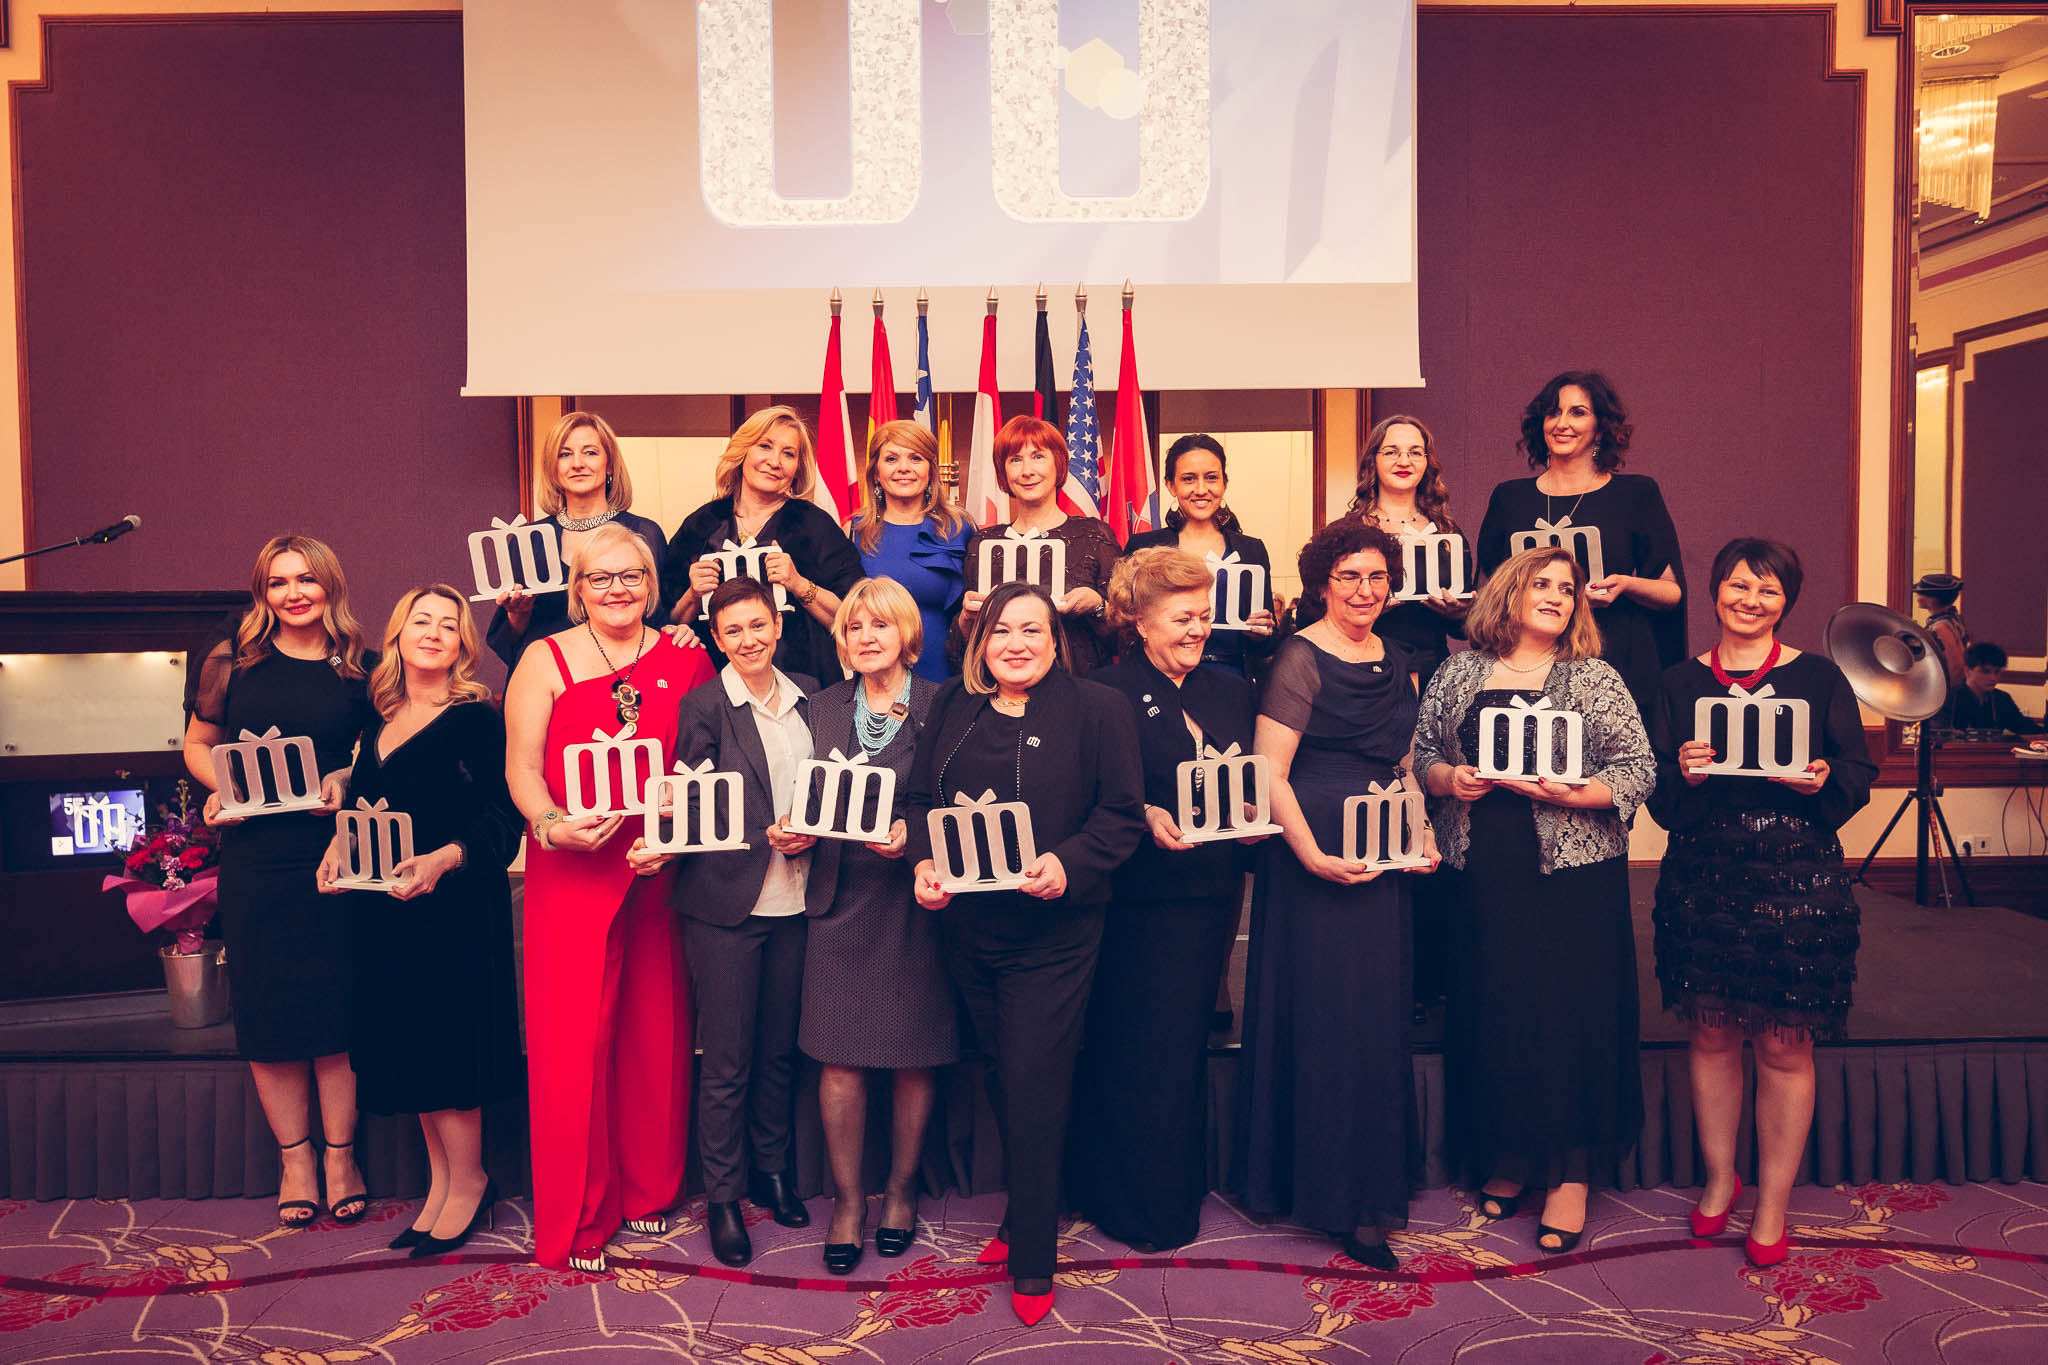 The Croatian Women of Influence Award